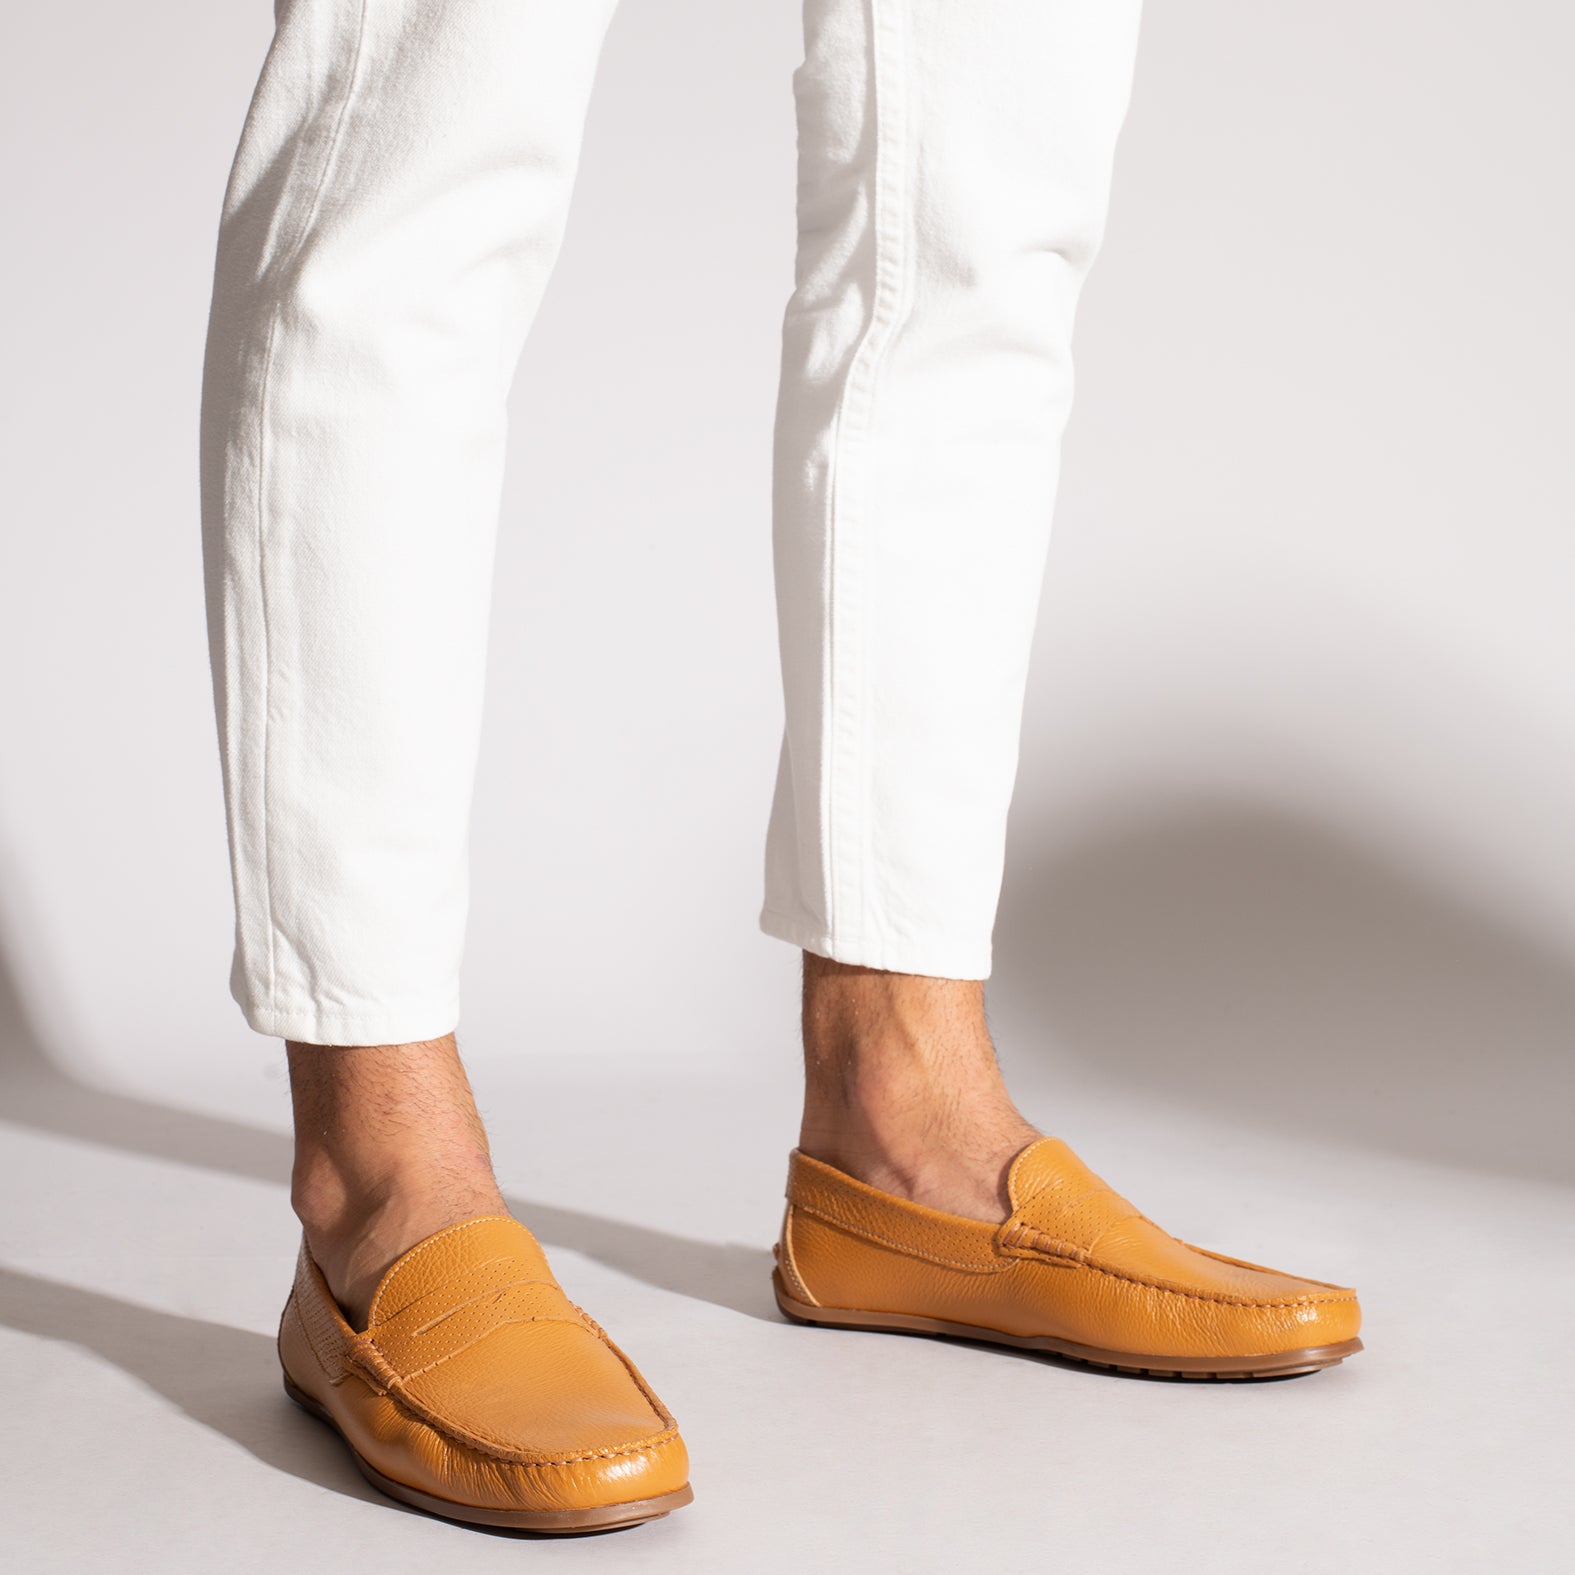 MOCCASIN – ORANGE nappa leather loafer for men